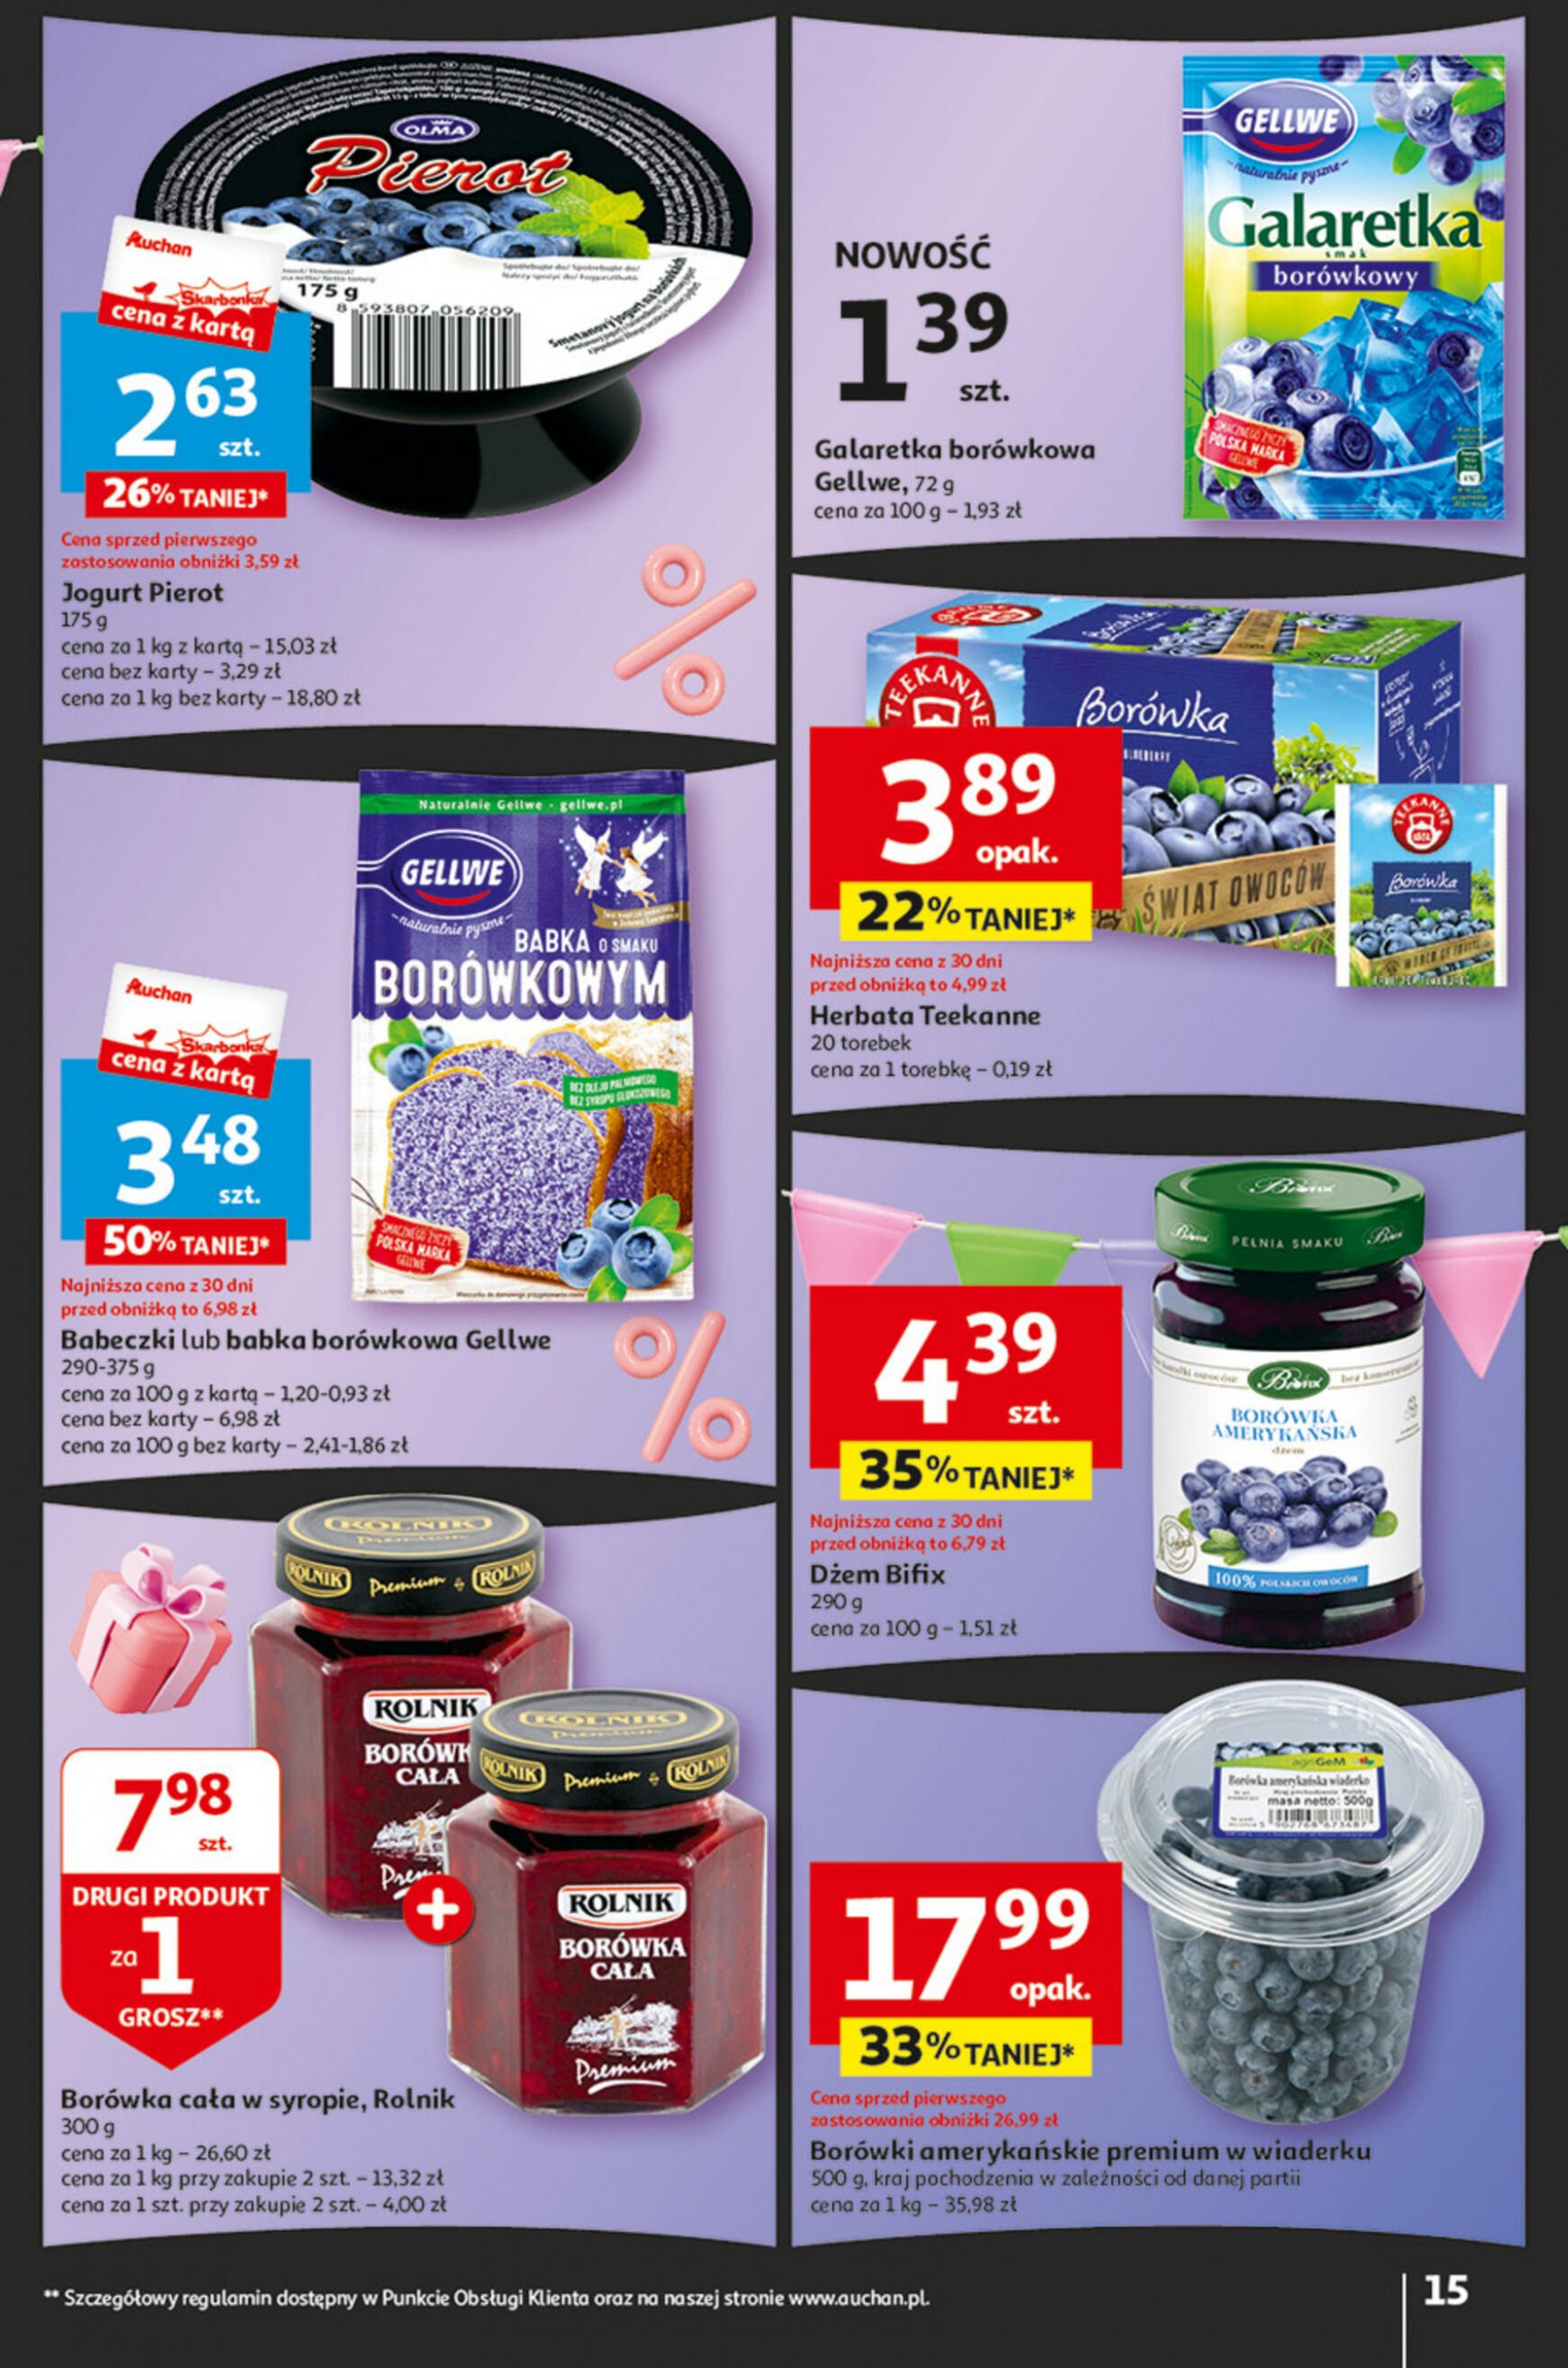 auchan - Hipermarket Auchan - Gazetka Jeszcze taniej na urodziny gazetka aktualna ważna od 09.05. - 15.05. - page: 15